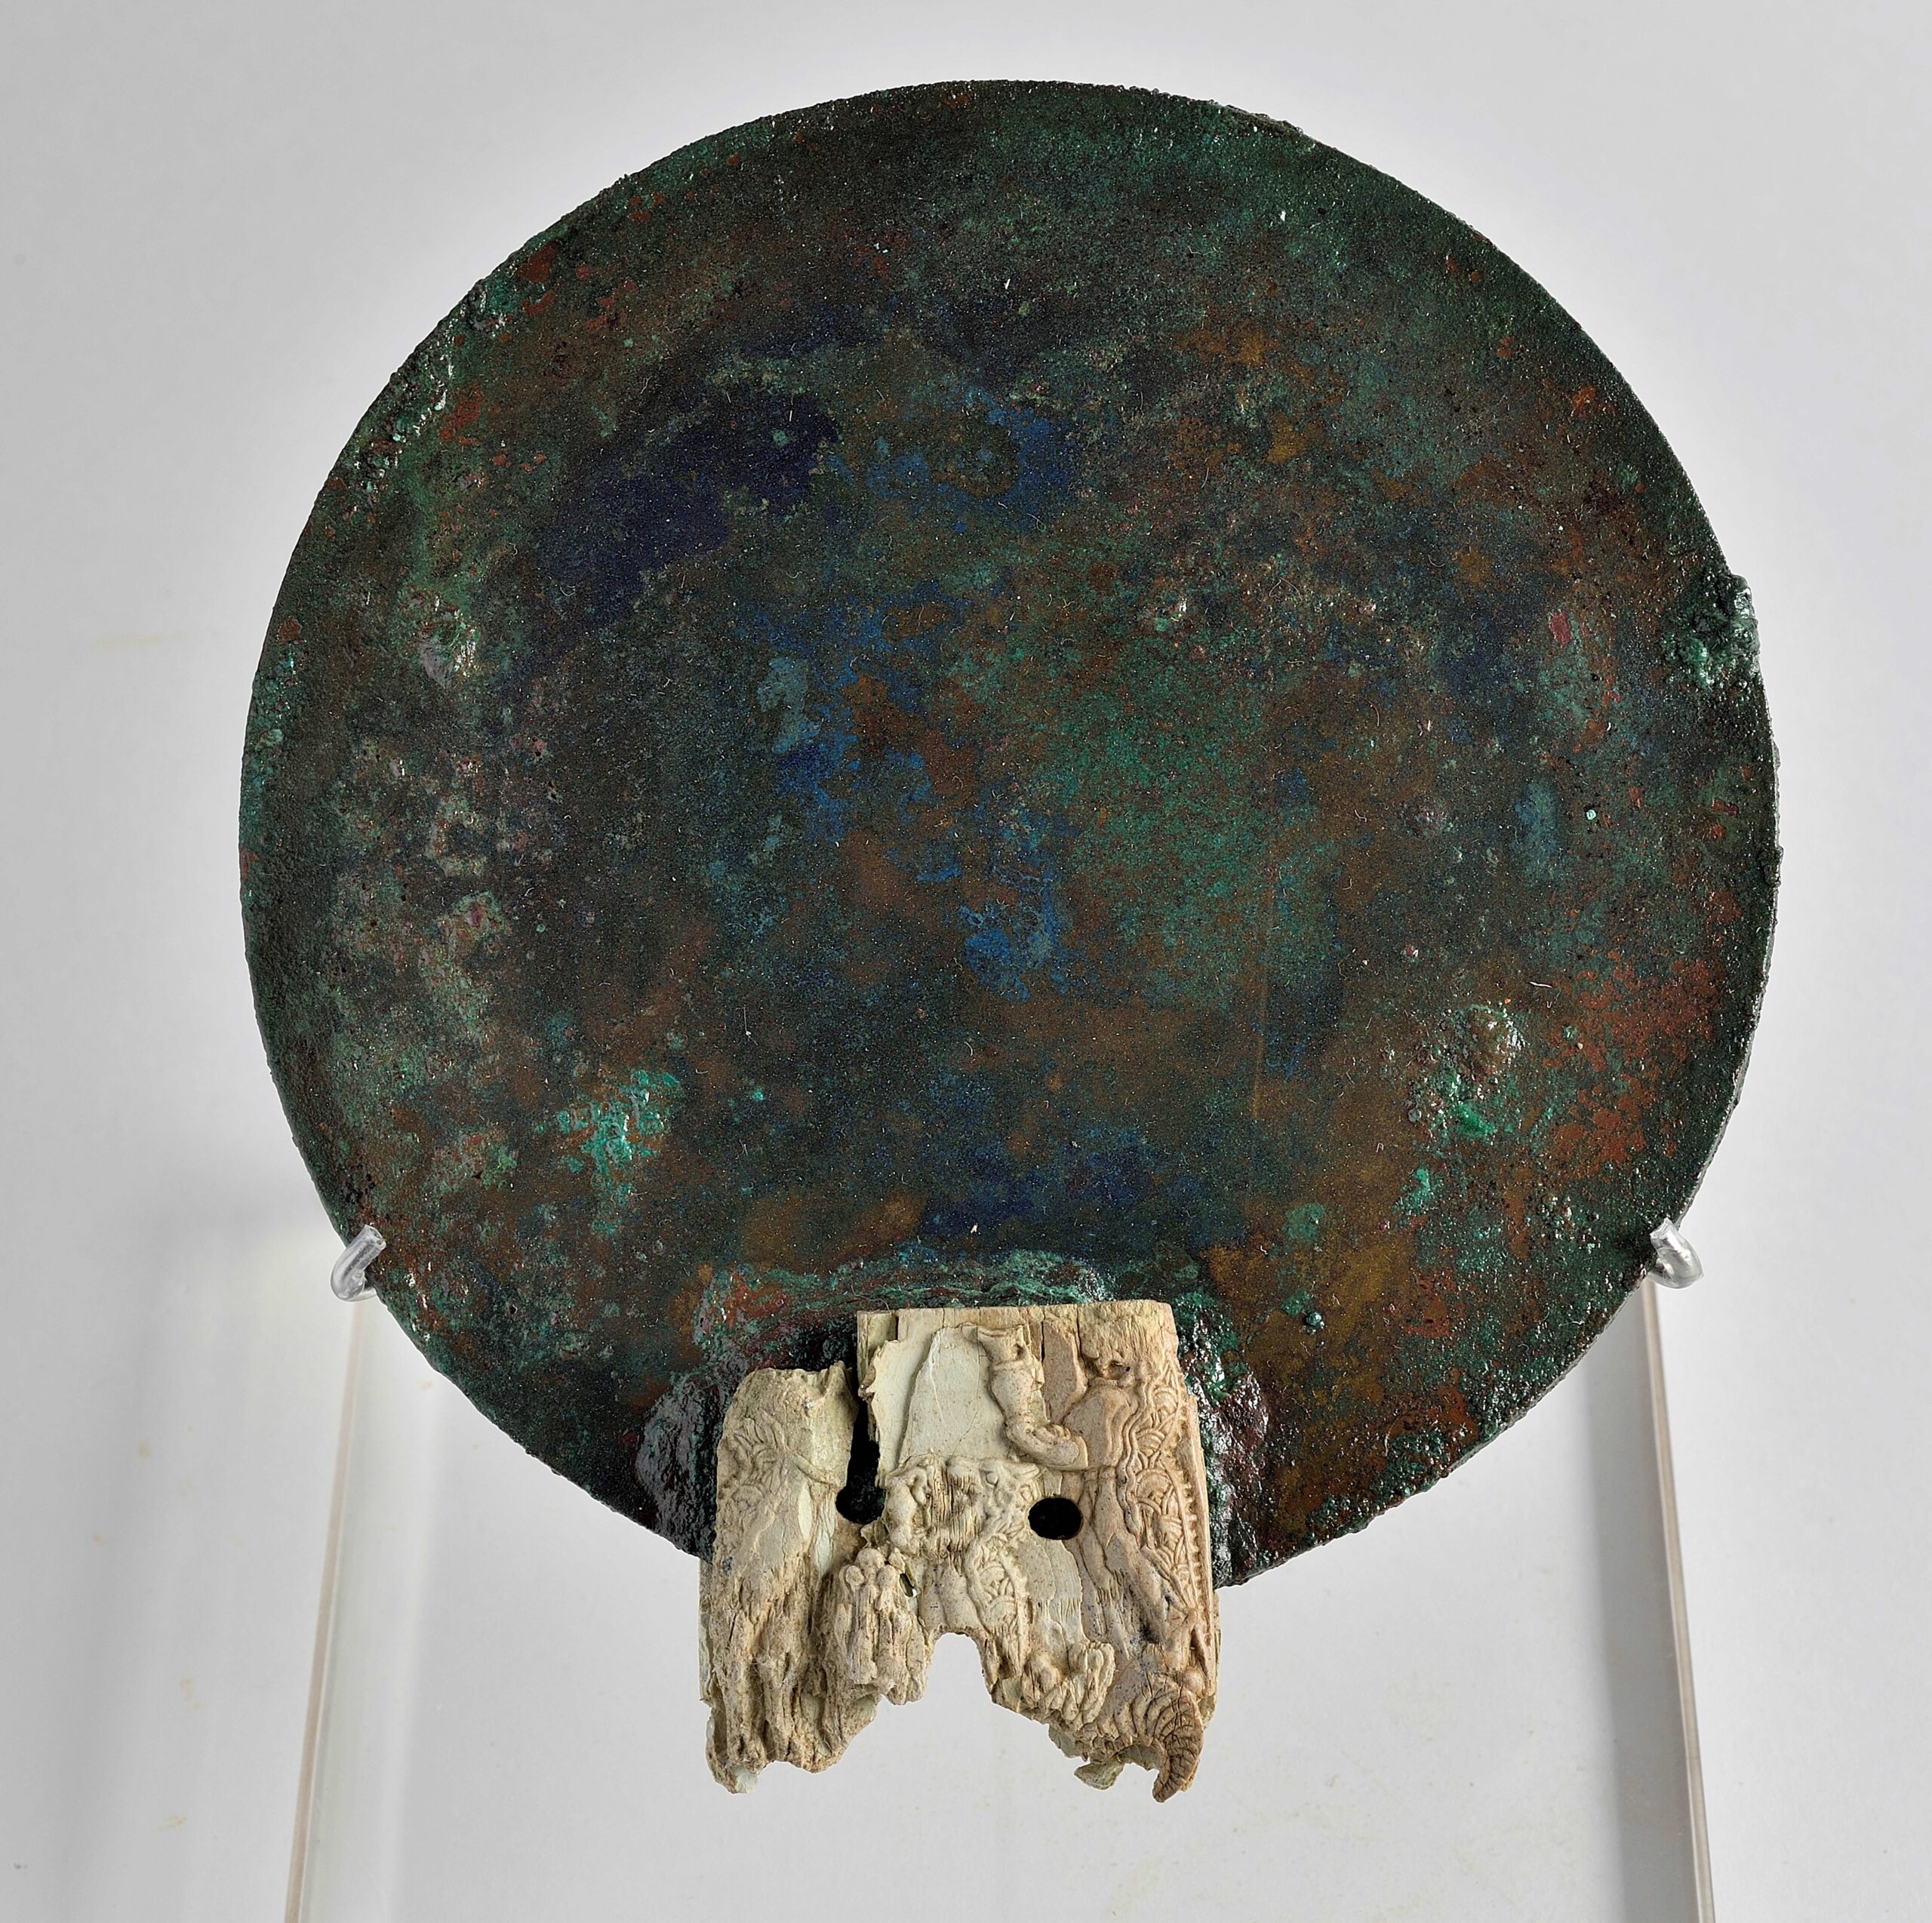 Χάλκινος καθρέφτης με οστέινη λαβή κοσμημένη με δαιμονικά όντα. Παγκαλοχώρι Ρεθύμνου, 1380-1300 π.Χ. (1)